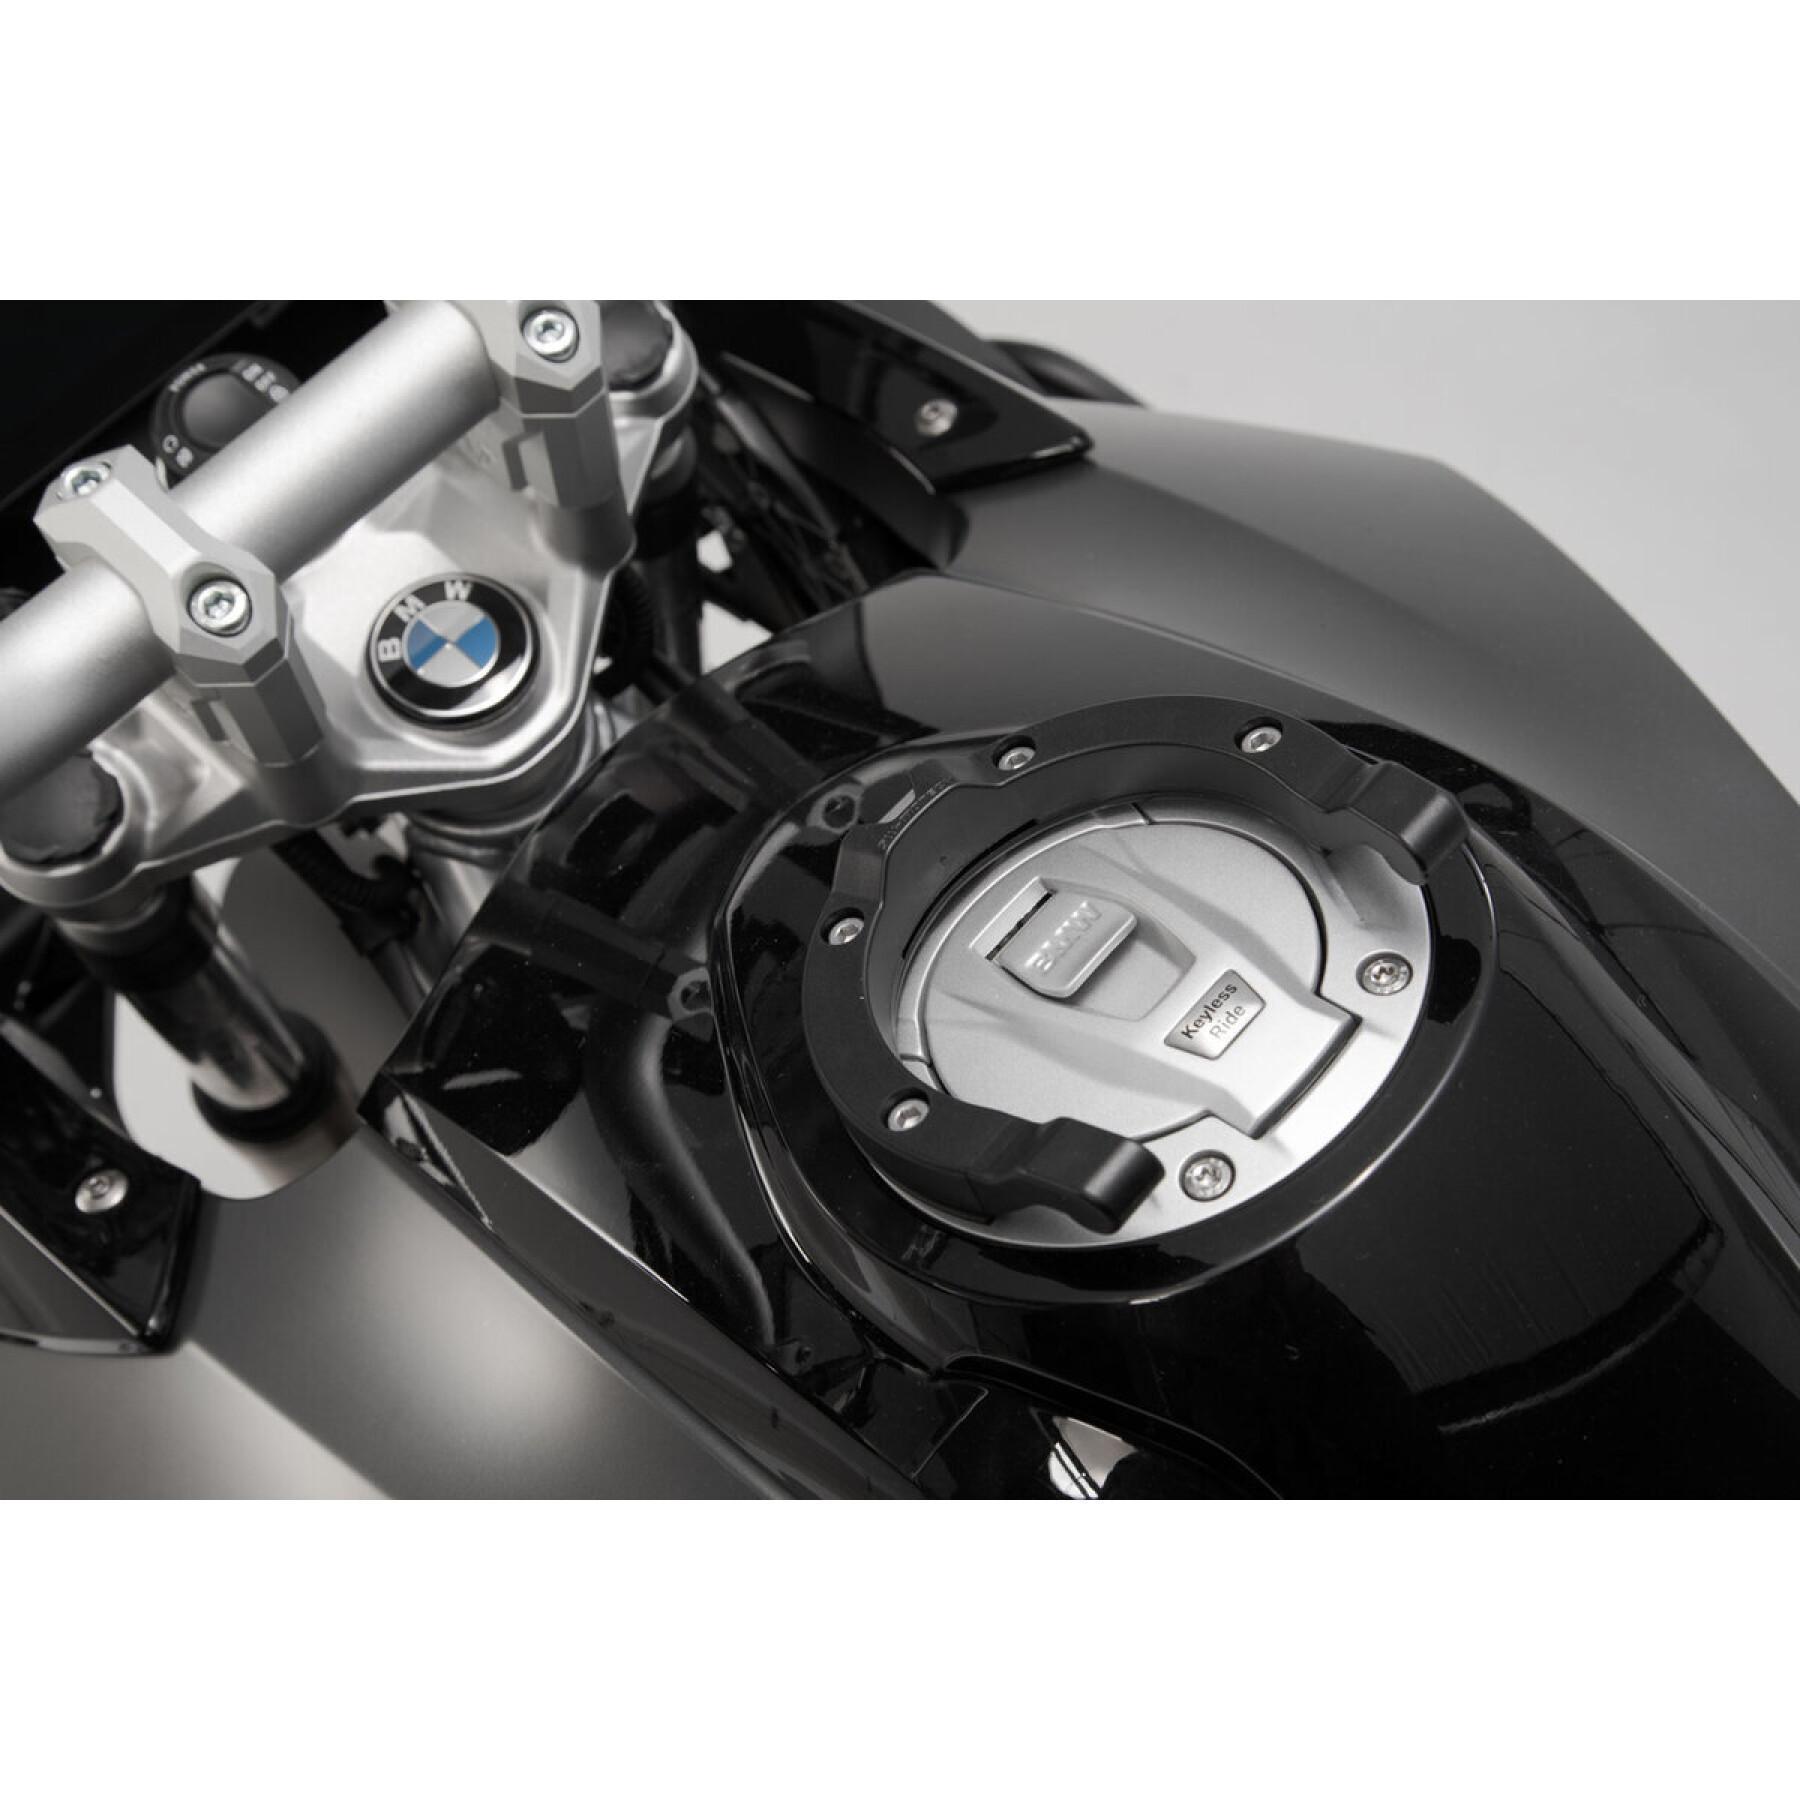 Anello del serbatoio SW-Motech Ion BMW / Ducati / KTM / Triumph